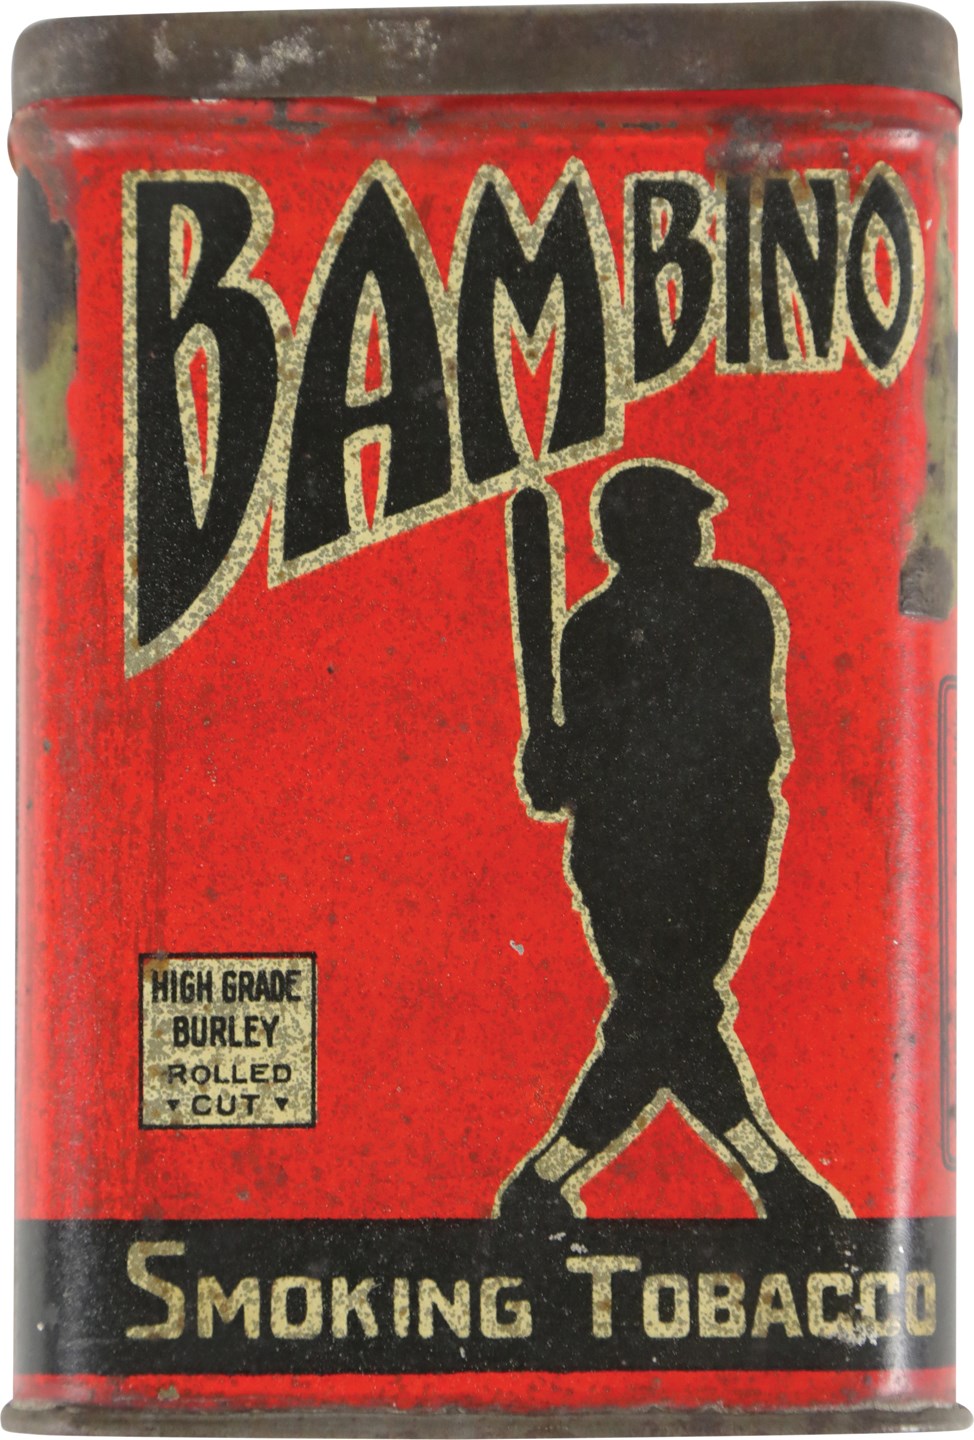 Ruth and Gehrig - Circa 1920s Babe Ruth "Bambino" Tobacco Tin